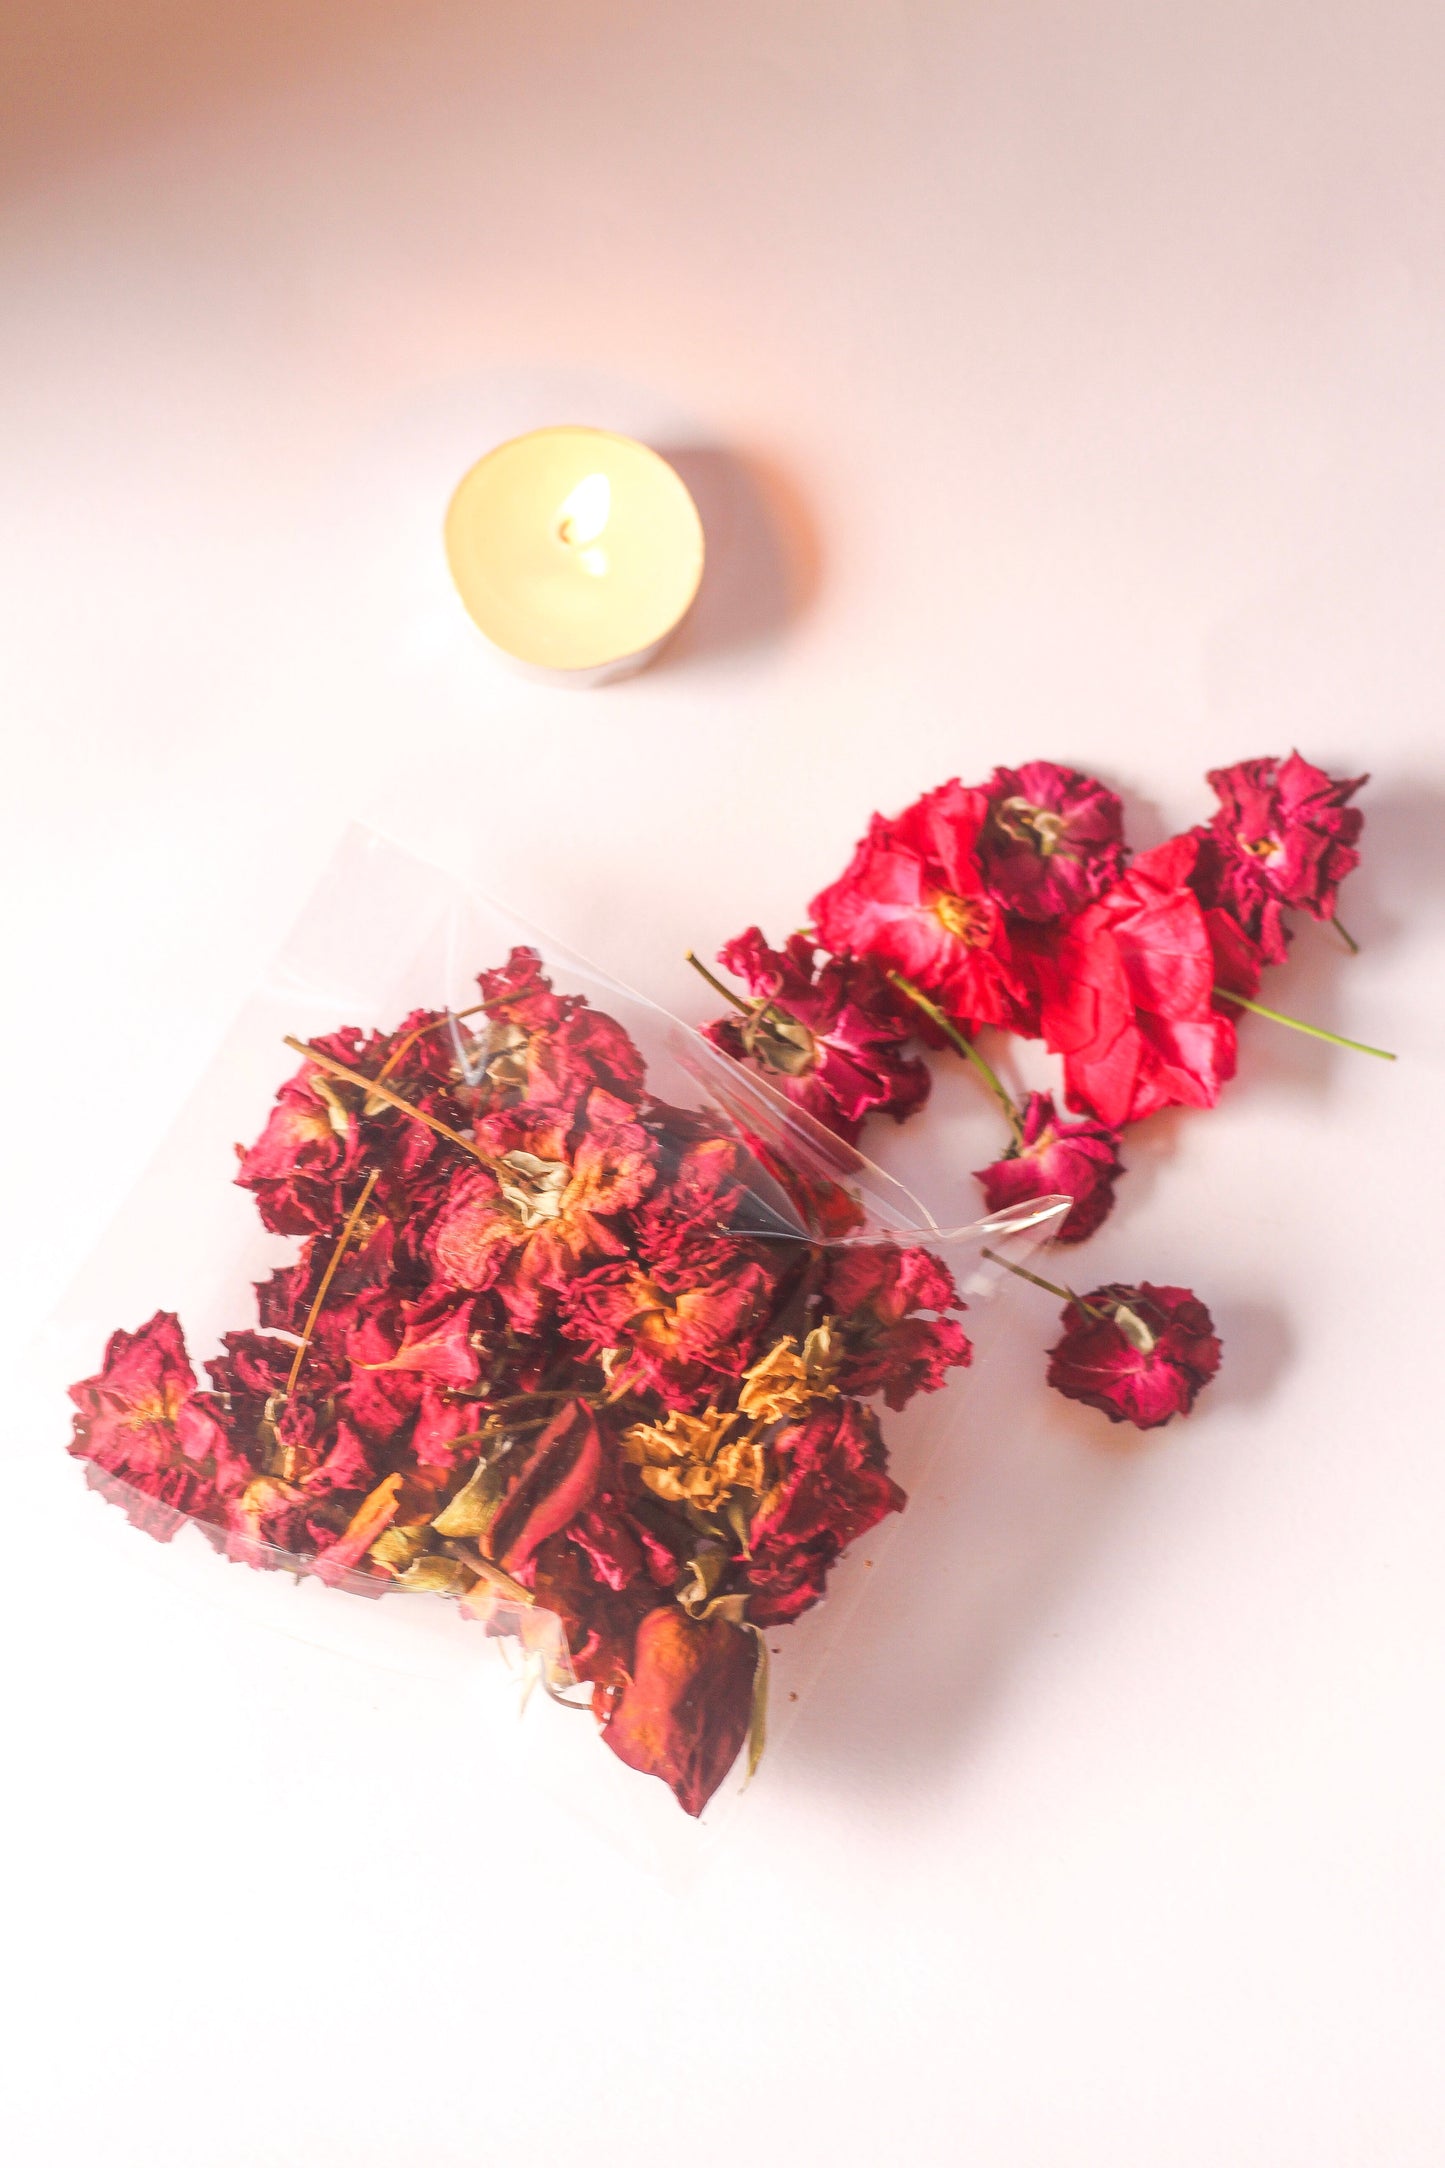 Dry Rose Petals - 1 Oz